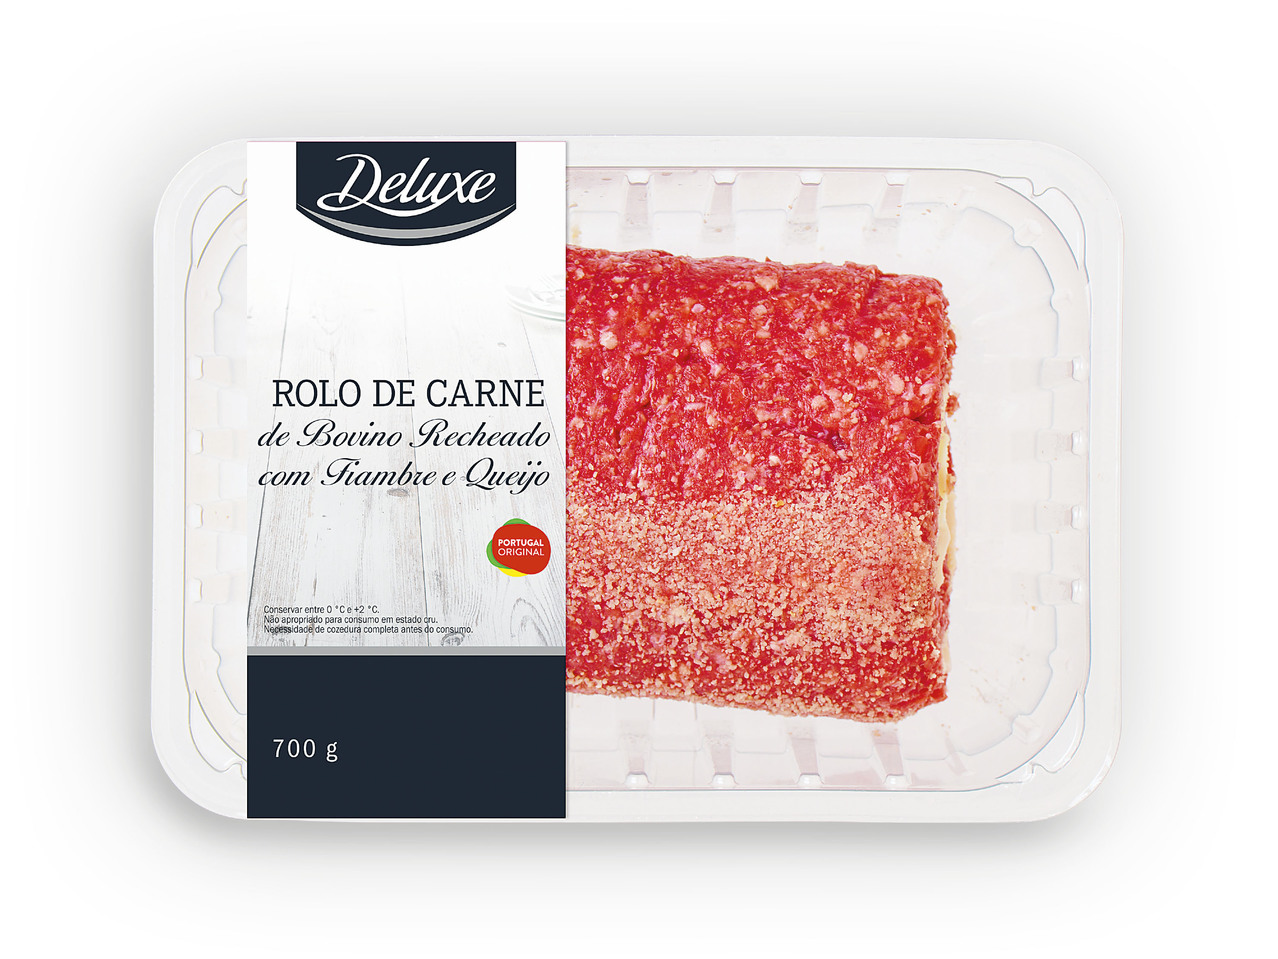 DELUXE(R) Rolo de Carne de Bovino Recheado com Fiambre e Queijo